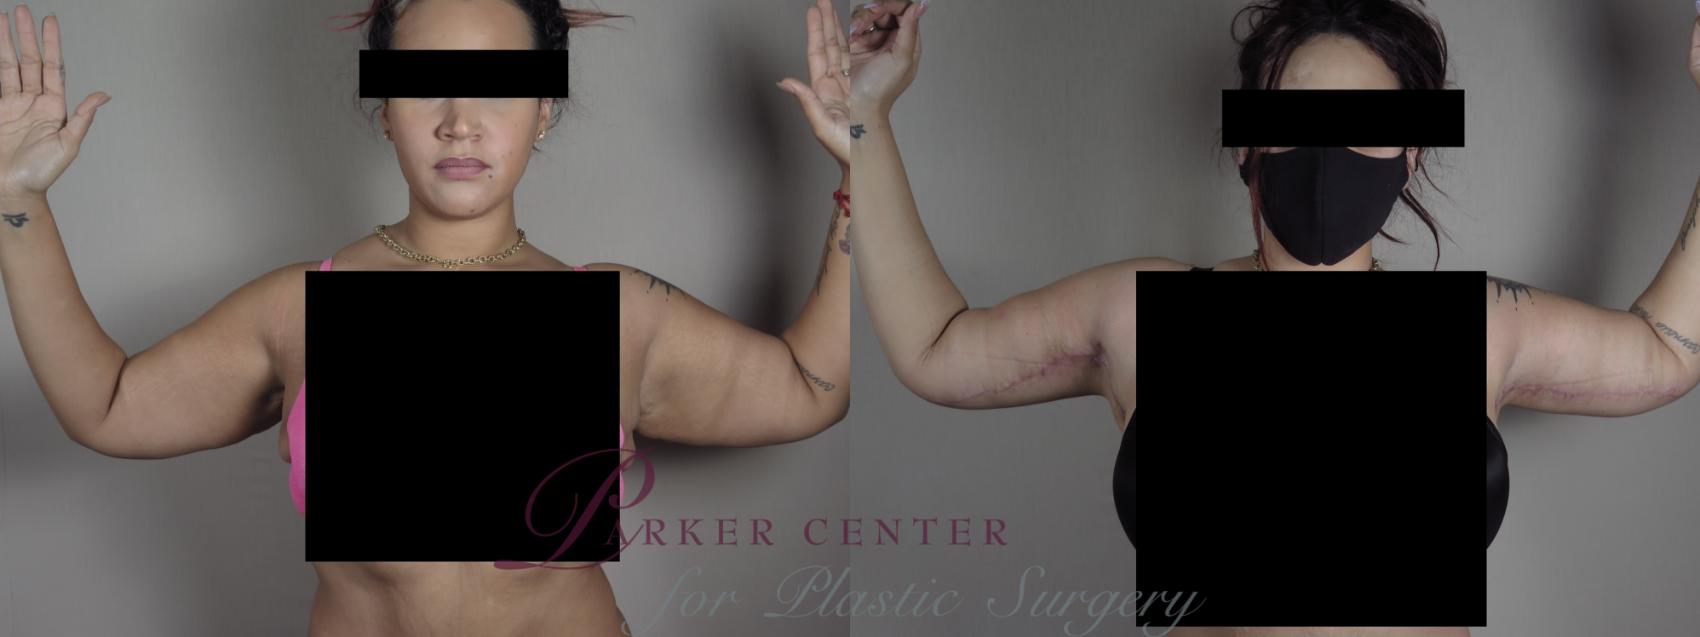 Upper Arm Rejuvenation Case 1322 Before & After Front | Paramus, NJ | Parker Center for Plastic Surgery